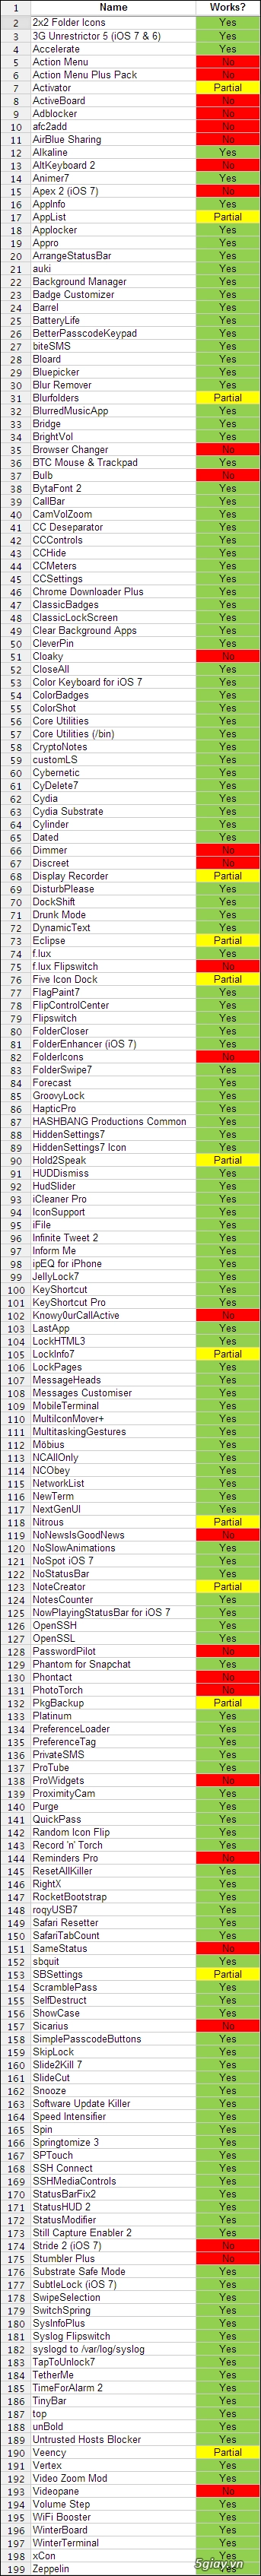 Danh sách tweak cydia tương thích ios 711 và iphone 5s - 2